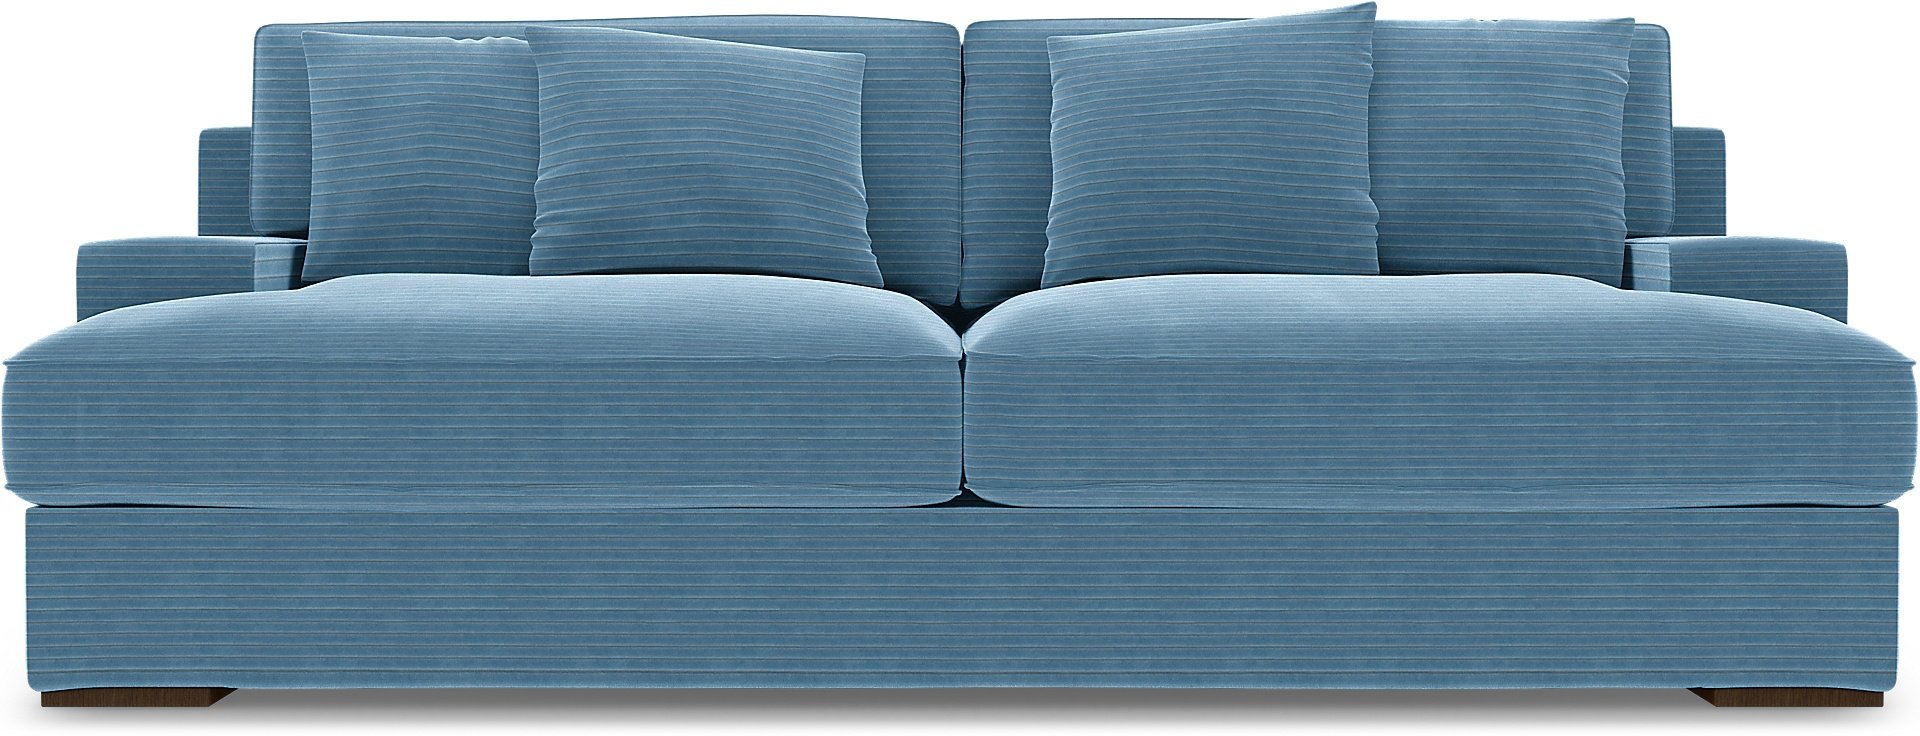 IKEA - Goteborg 3 Seater Sofa Cover, Sky Blue, Corduroy - Bemz